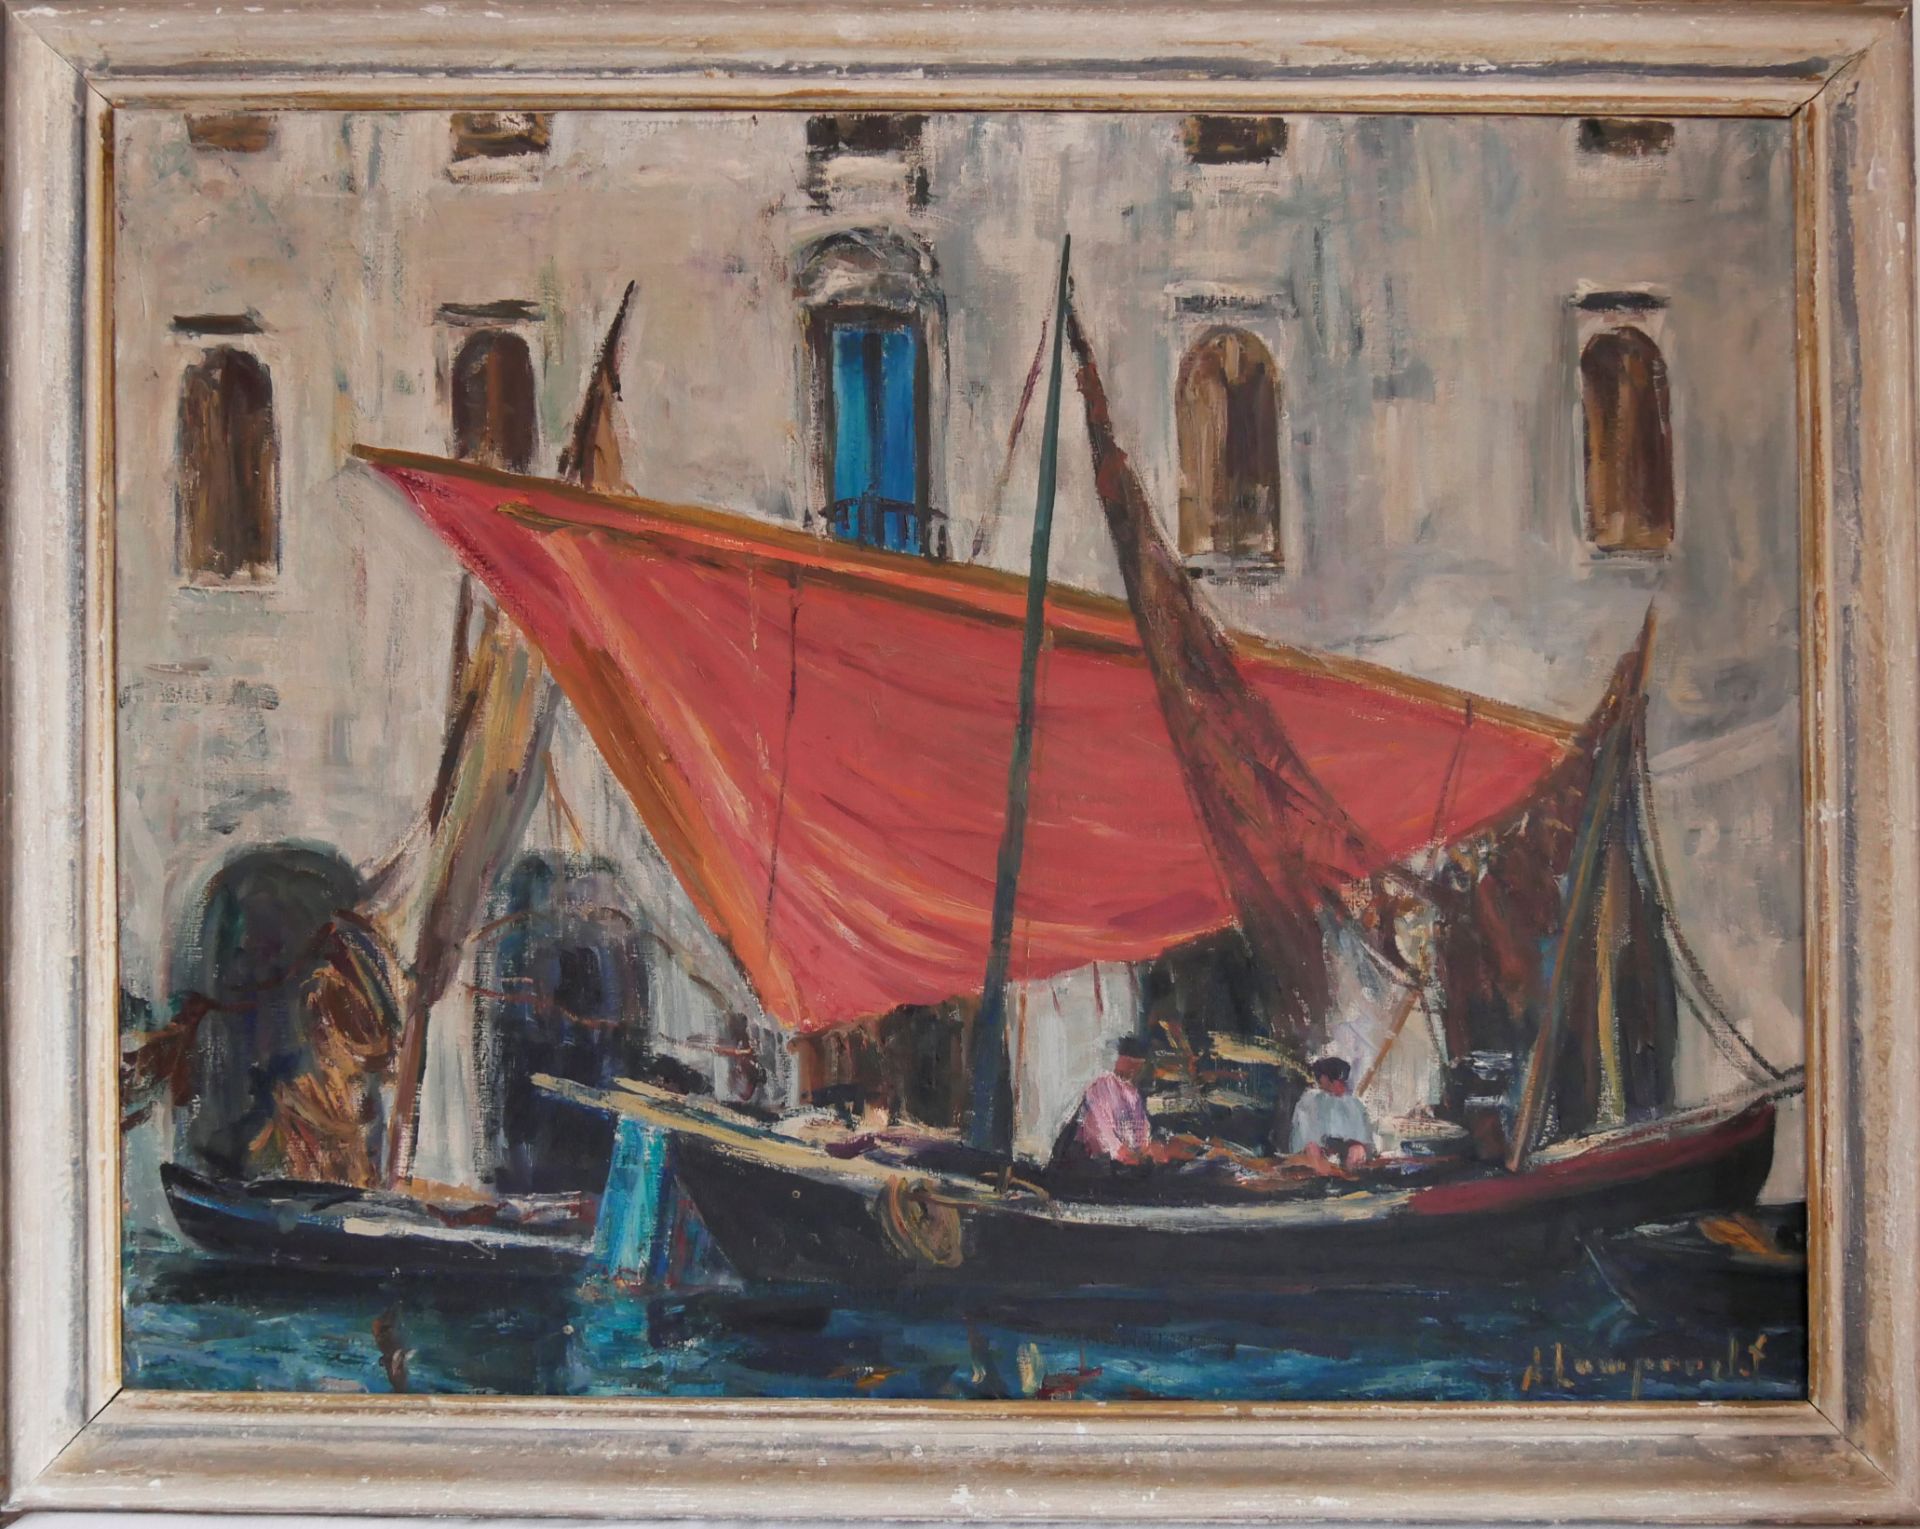 Anton Lamprecht (1901-1984), Ölgemälde auf Leinwand, "Venedig Lagune mit Booten", gerahmt, rechts